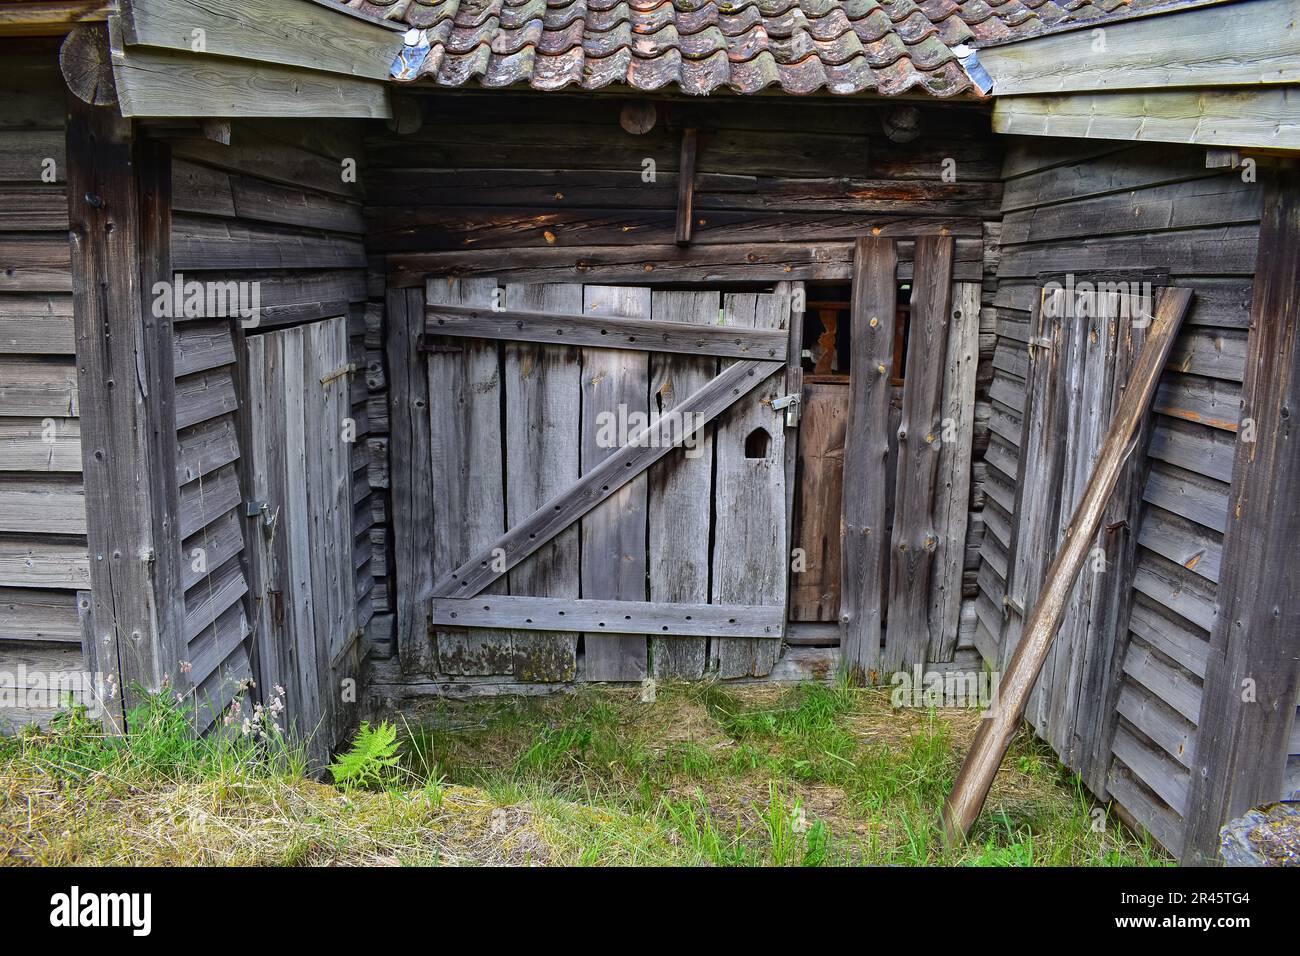 Ancien hangar en bois délabré avec tuiles de toit altérées, Norvège, Europe Banque D'Images